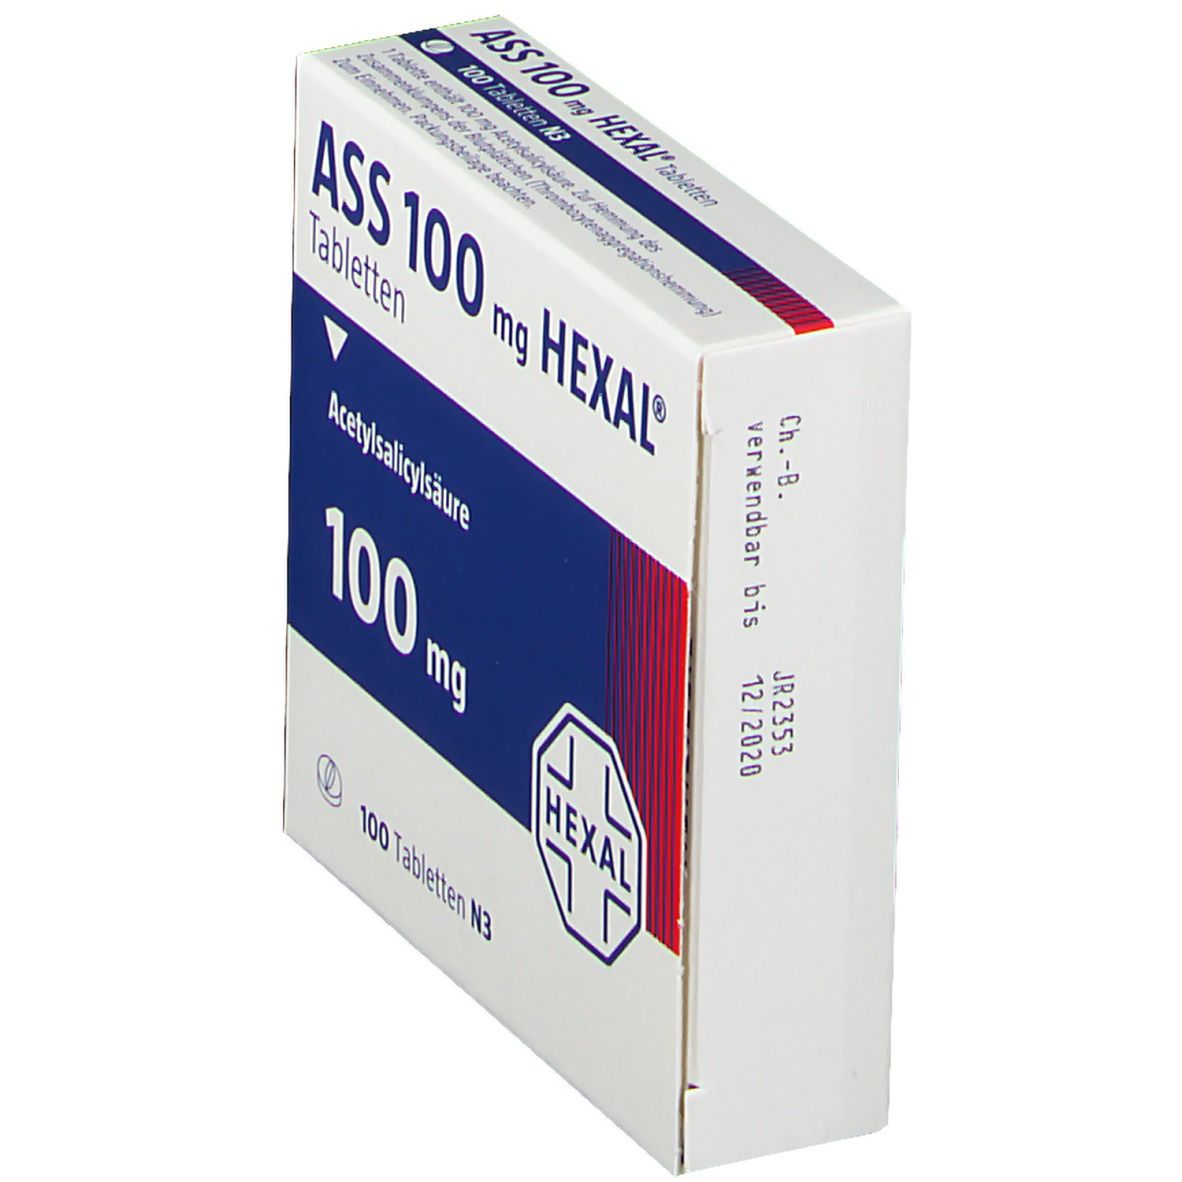 ASS 100 mg HEXAL®